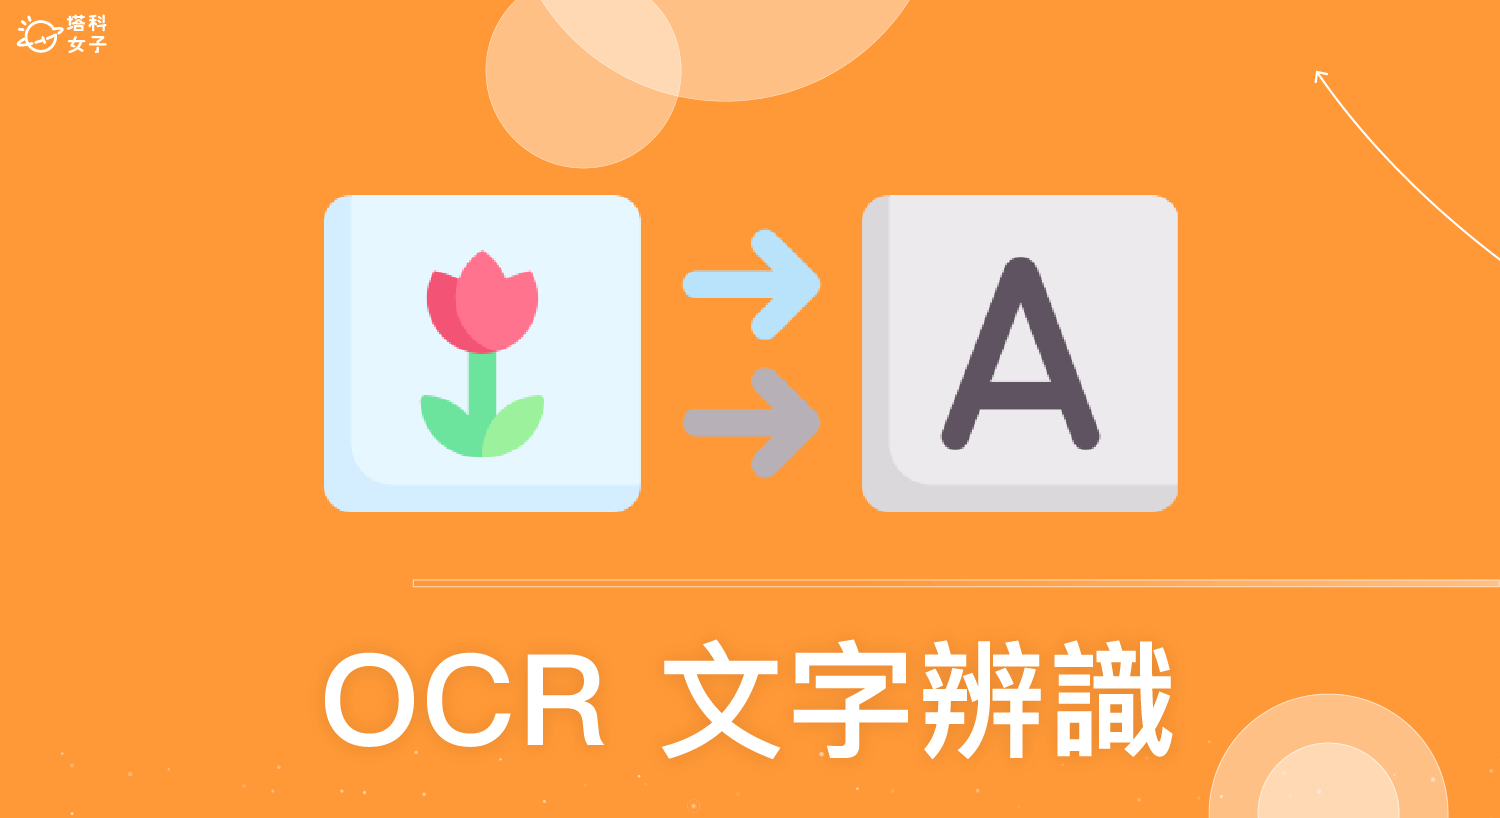 【2022】免費 6 款最好用 OCR 文字辨識軟體將圖片轉文字